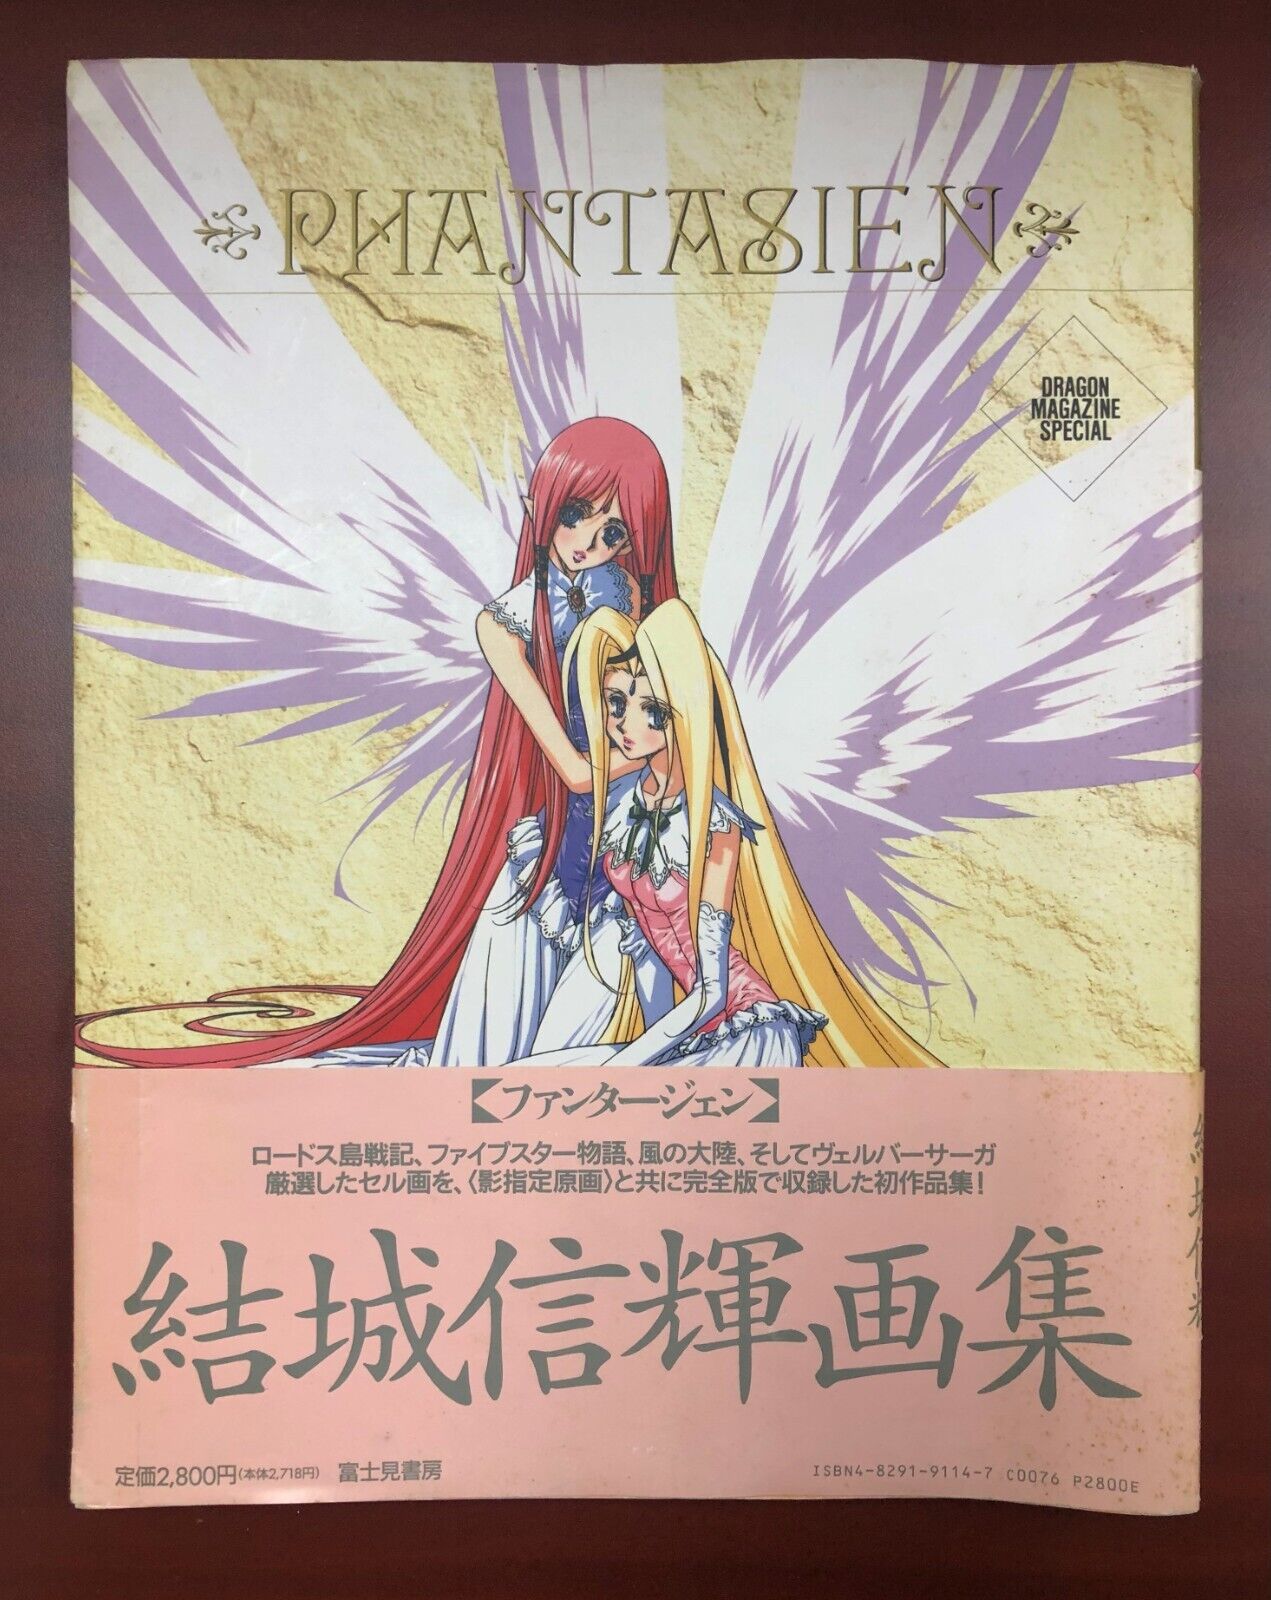 Nobuteru Yuuki Phantasien Art - Record of Lodoss War - Dragon Magazine Special